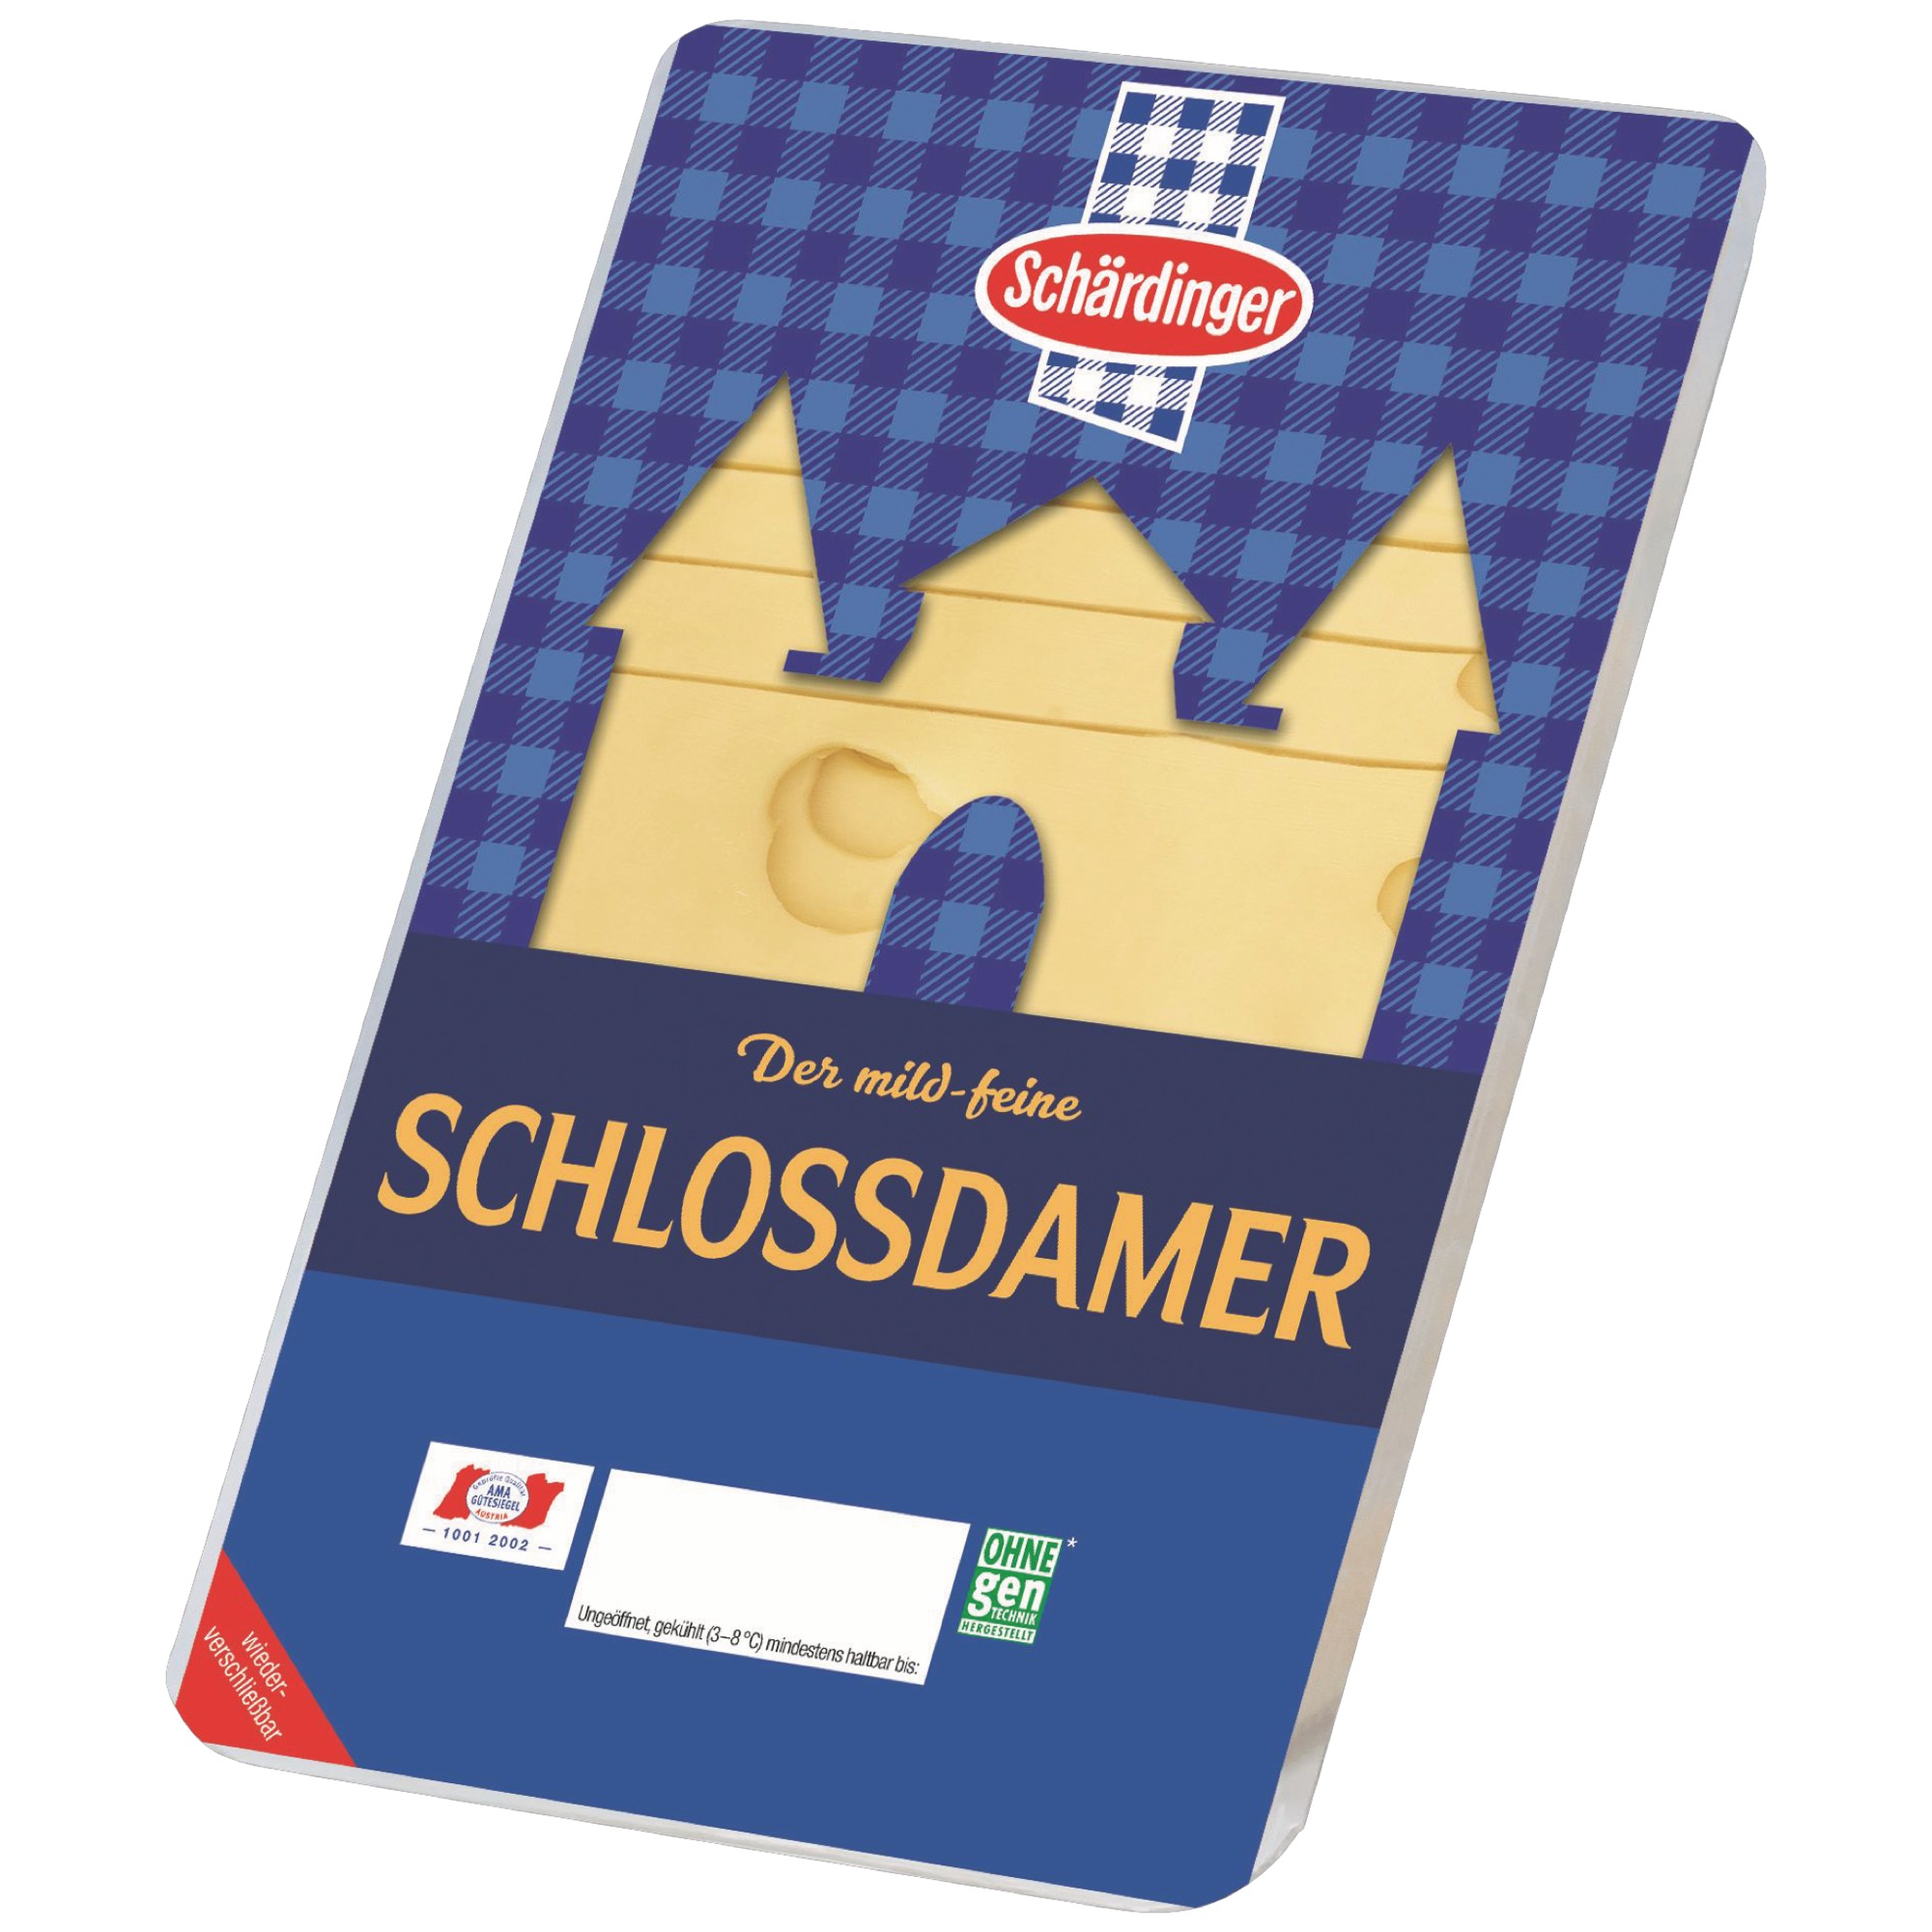 Schärdinger plátky 150g Schlossdamer 35%